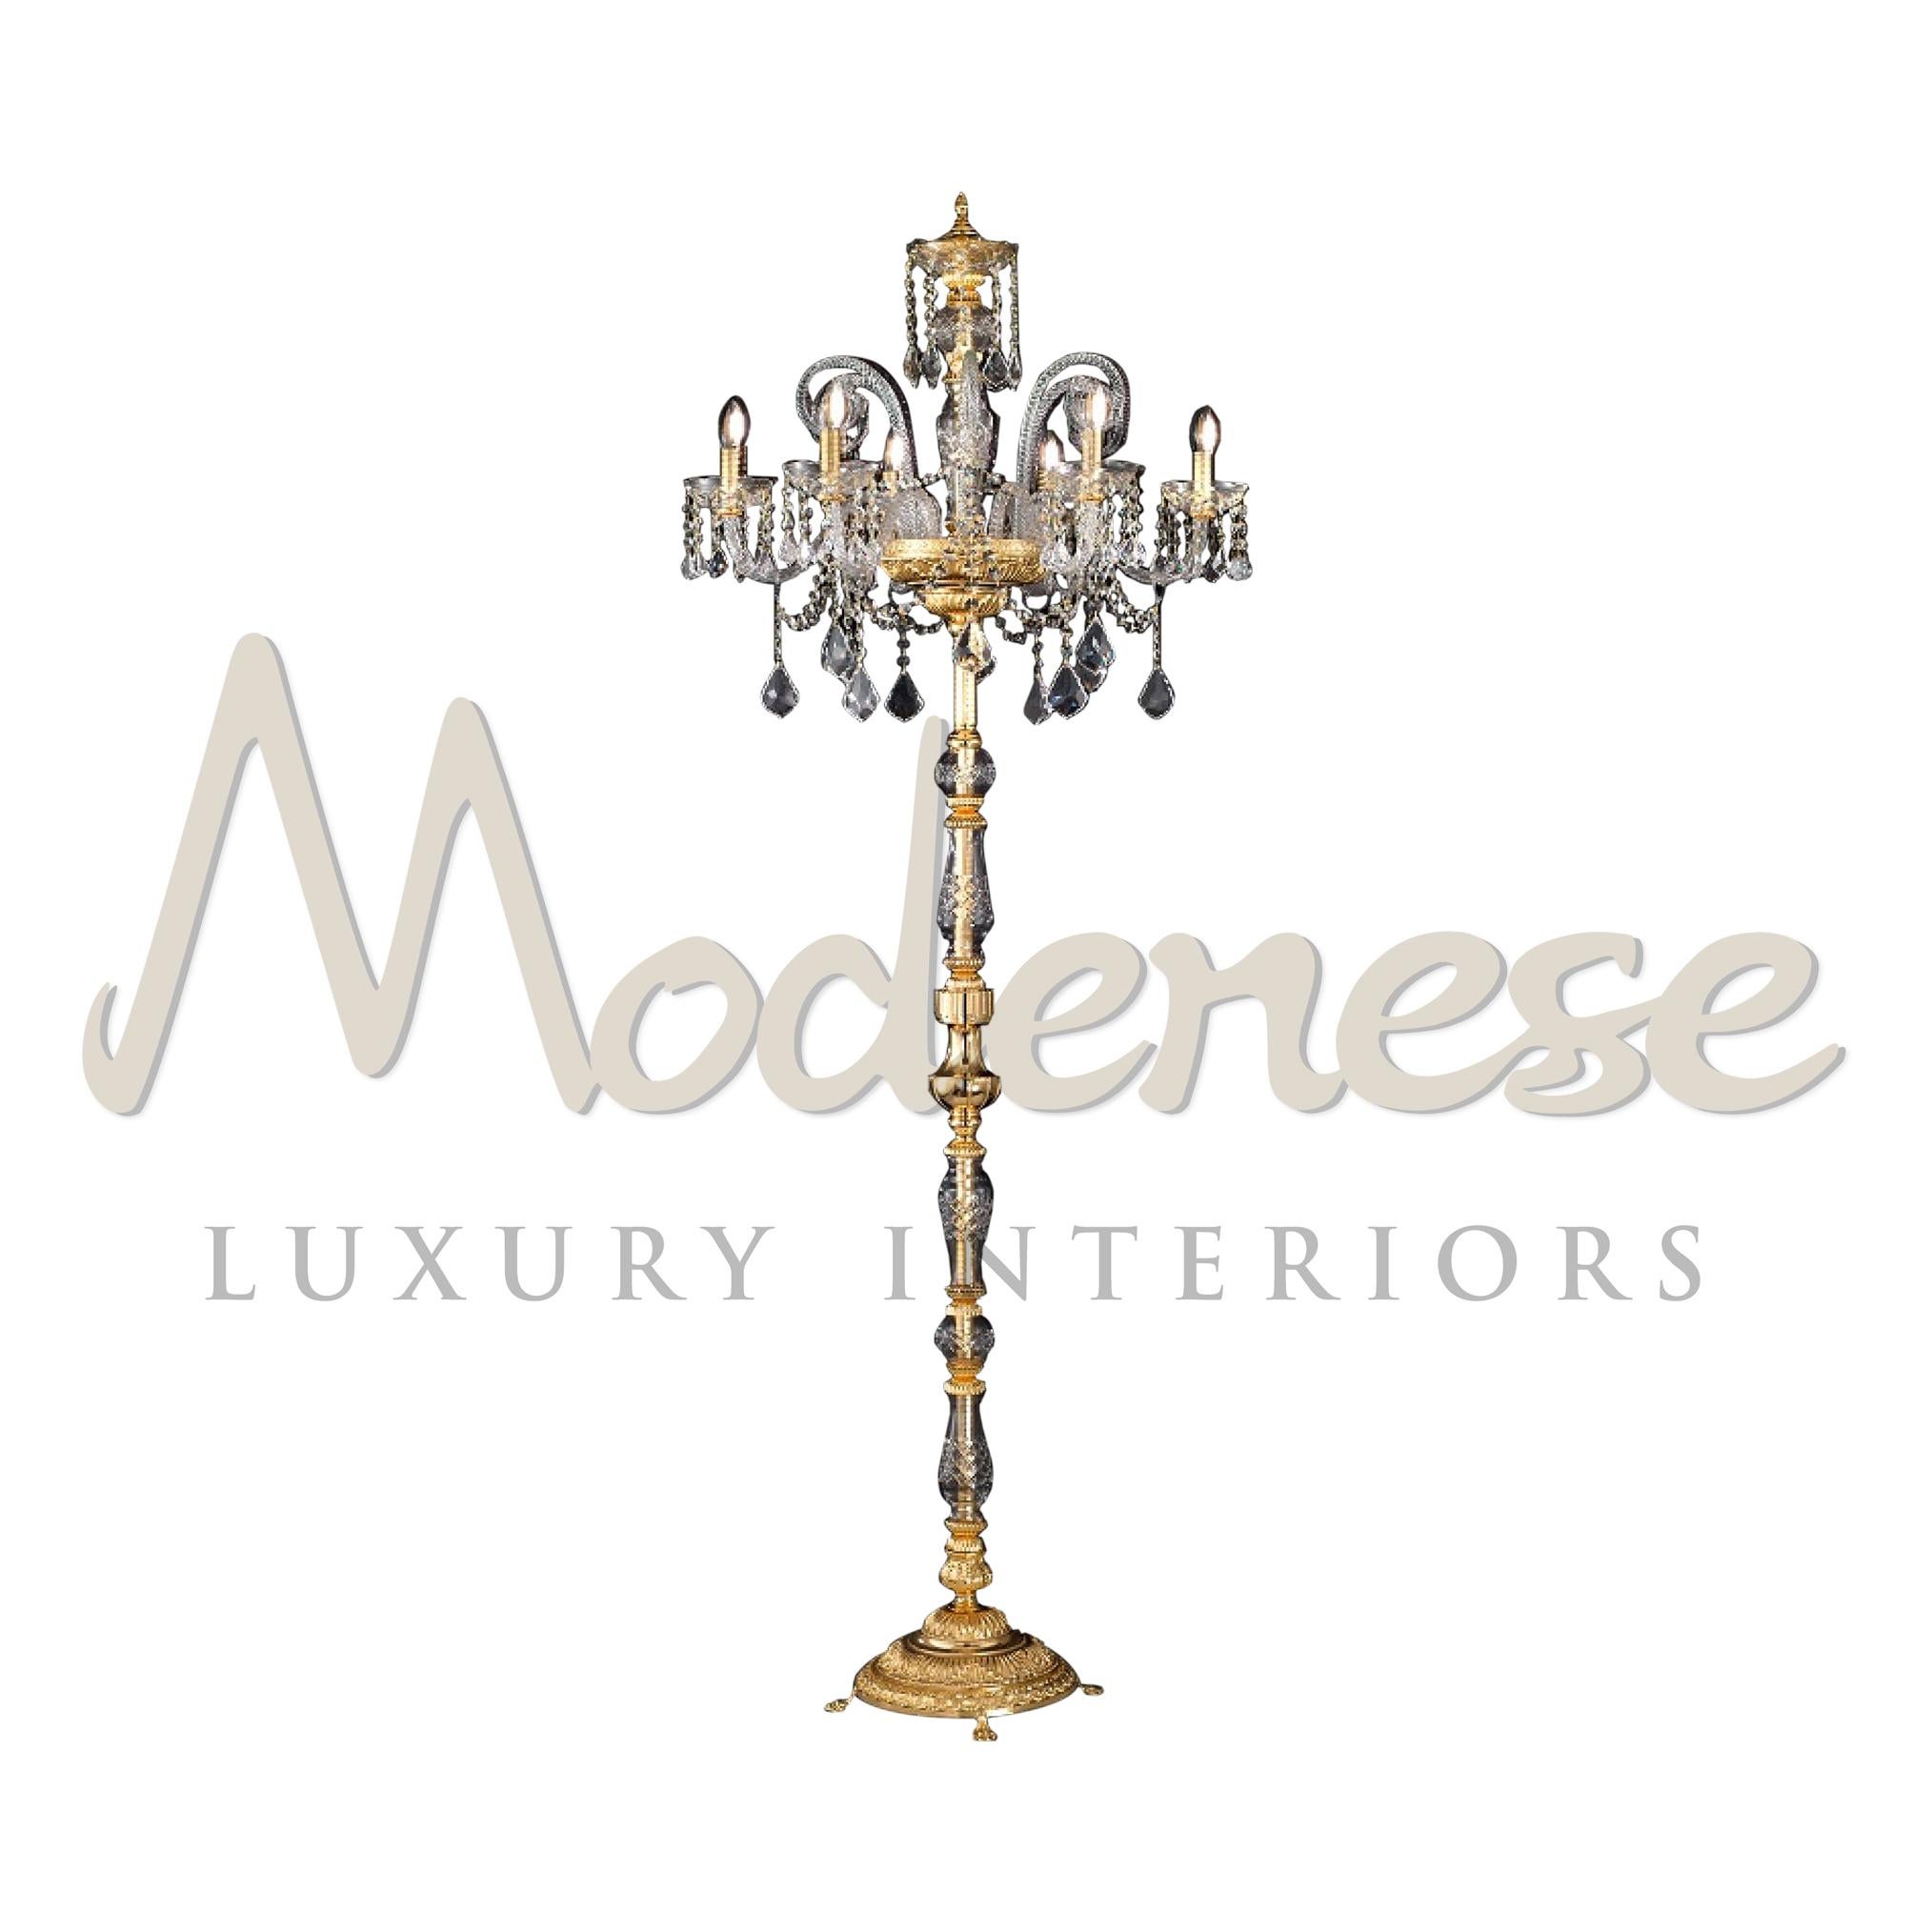 Dans les lampadaires que nous proposons, vous pouvez trouver un design traditionnel et des matériaux innovants, comme dans ce modèle de lampadaire 6 lumières avec finition dorée et cristal, le tout personnalisé par Modenese Gastone Luxury Interiors.